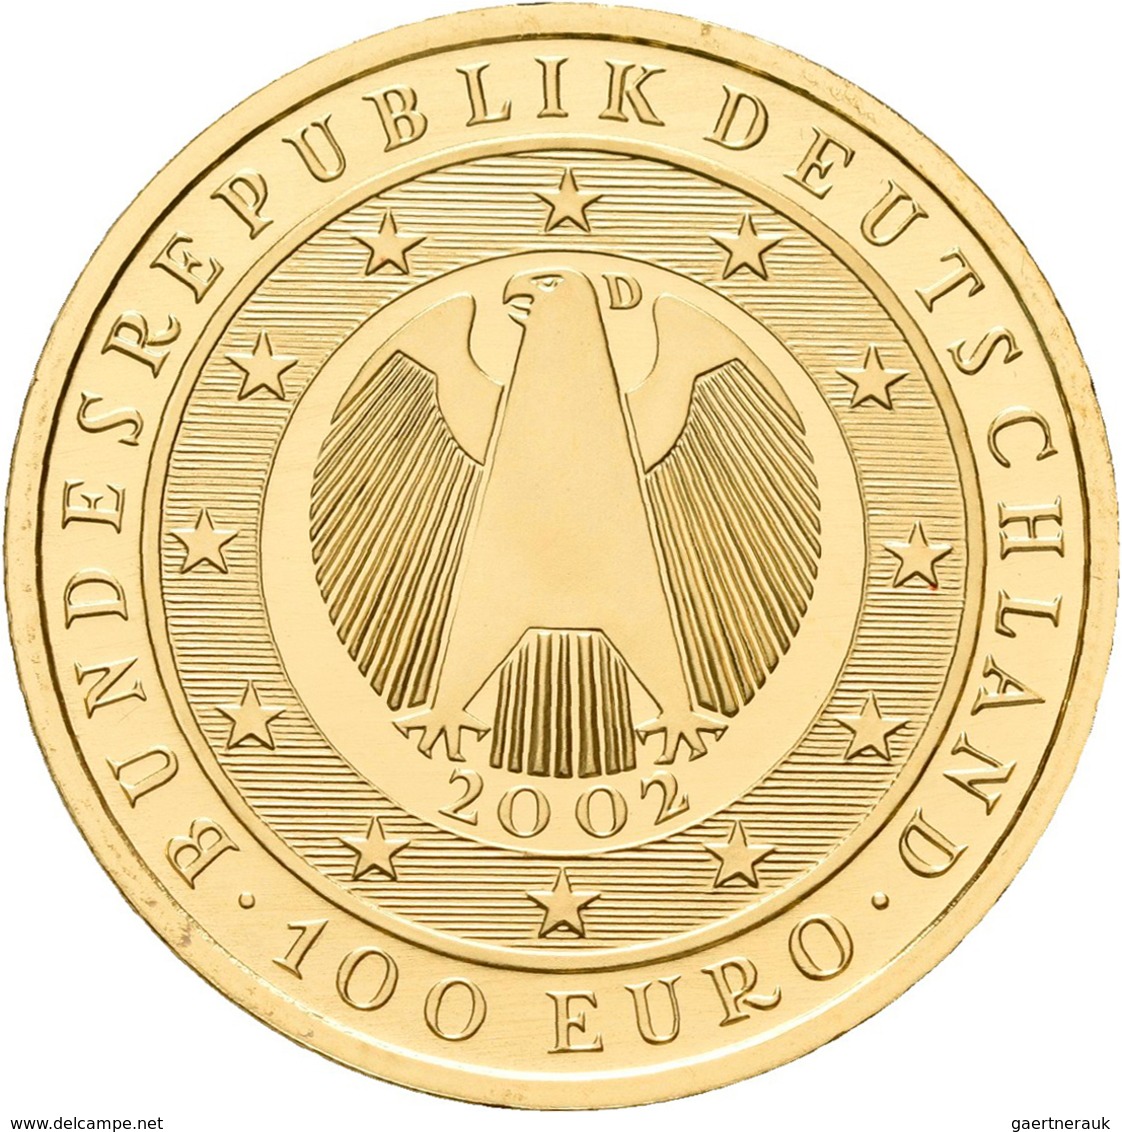 Deutschland - Anlagegold: 100 Euro 2002 Währungsunion (D), In Originalkapsel, Jaeger 493, Gold 999/1 - Germany